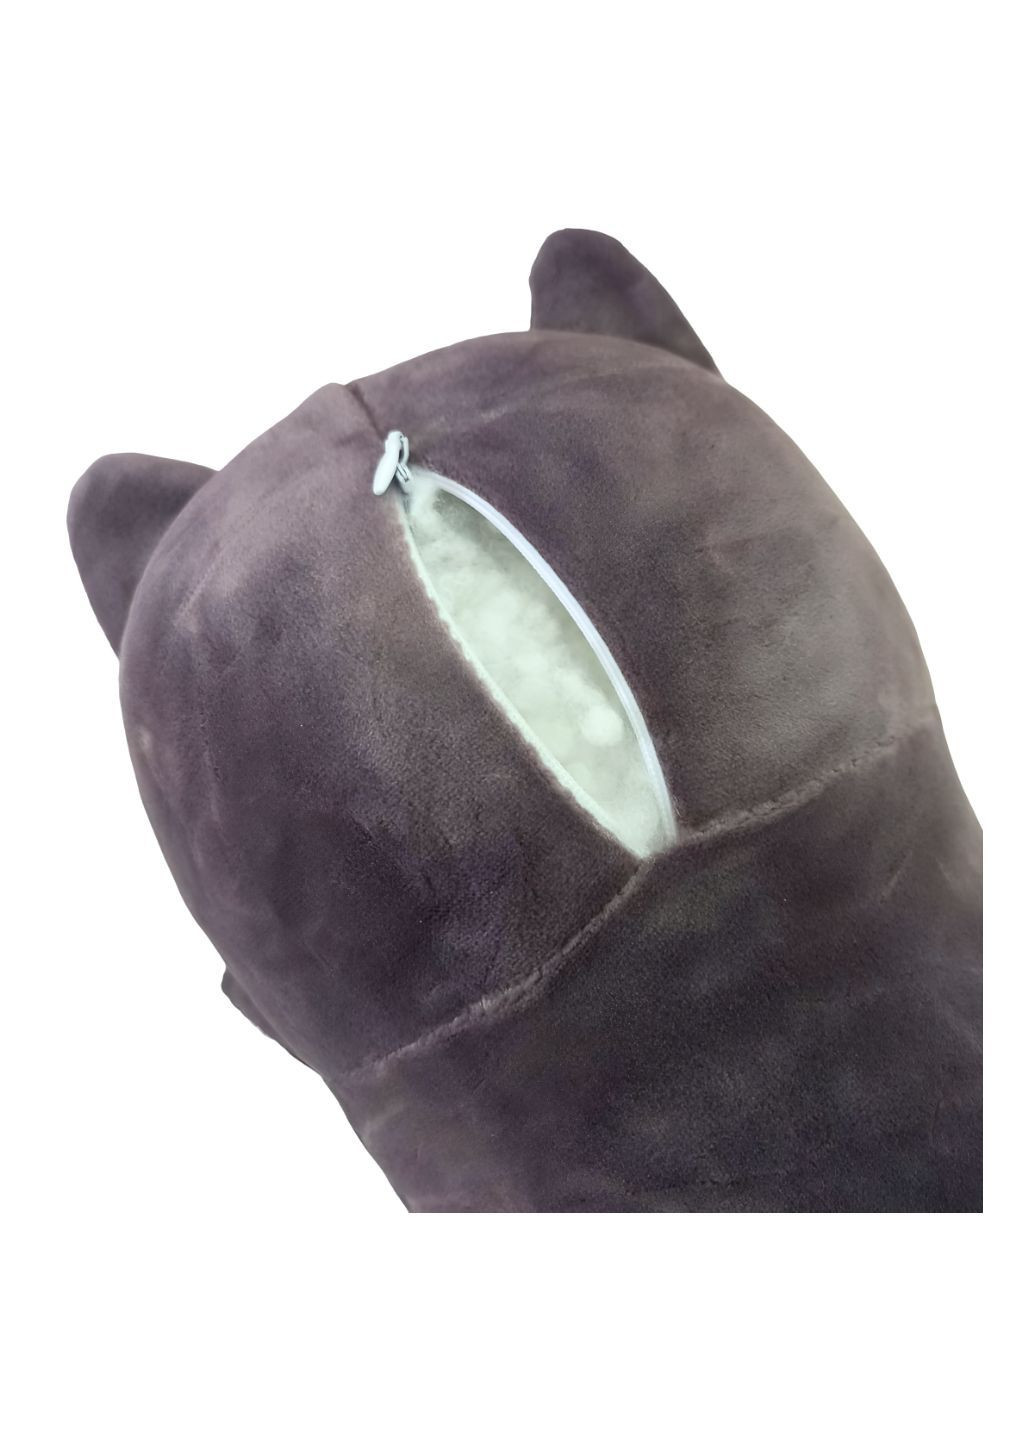 Кот батон 90 см с объемной мордочкой 3Д 3D мягкая игрушка антистресс подушка плюшевый котик обнимашка графит No Brand (290186422)